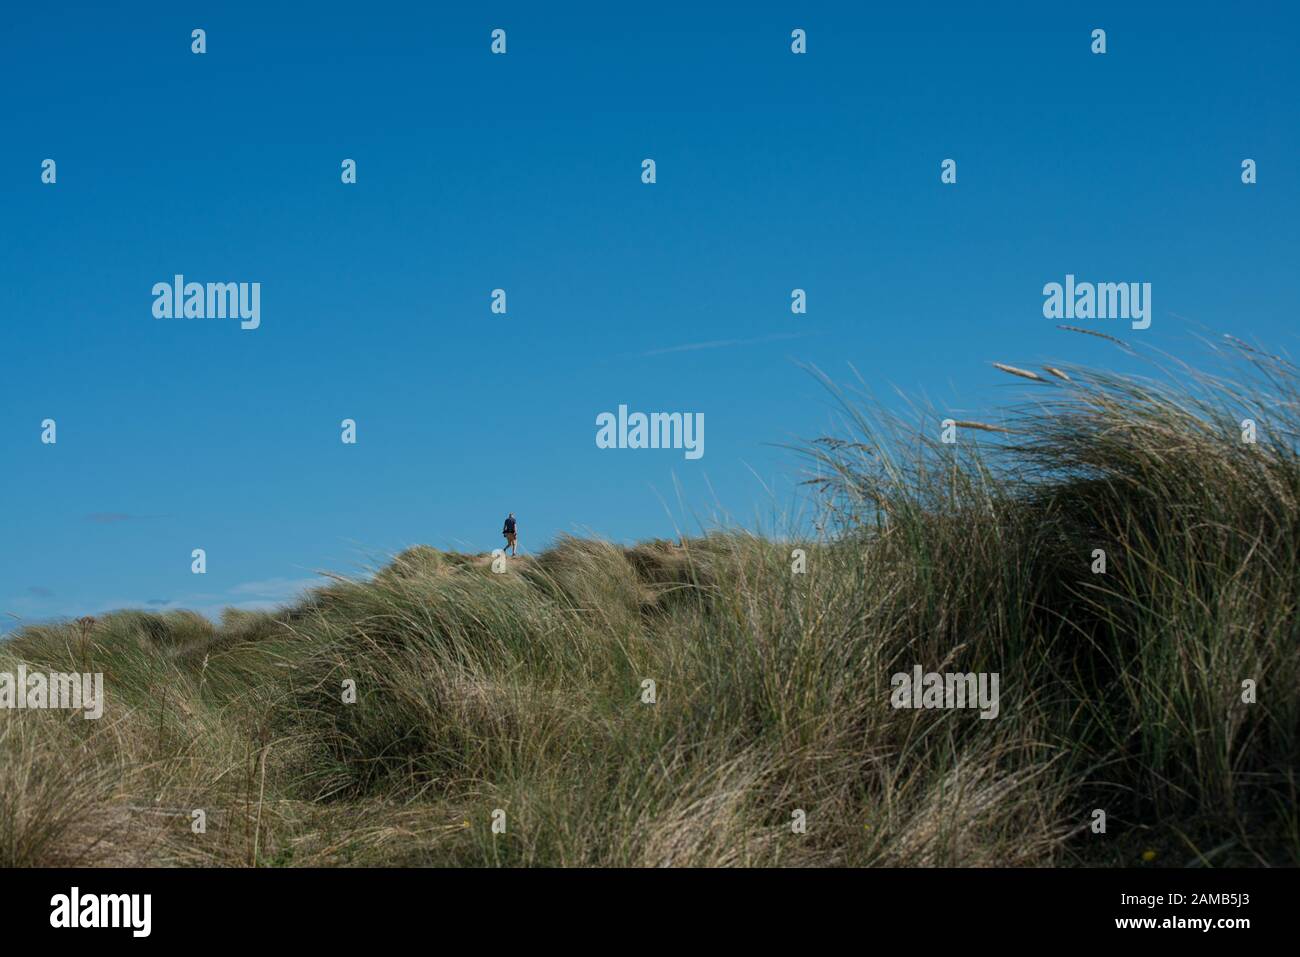 Vista bassa di una figura umana singola distante su dune di sabbia con figura che appare piccola come in prospettiva forzata e primo piano di erba di marram Foto Stock